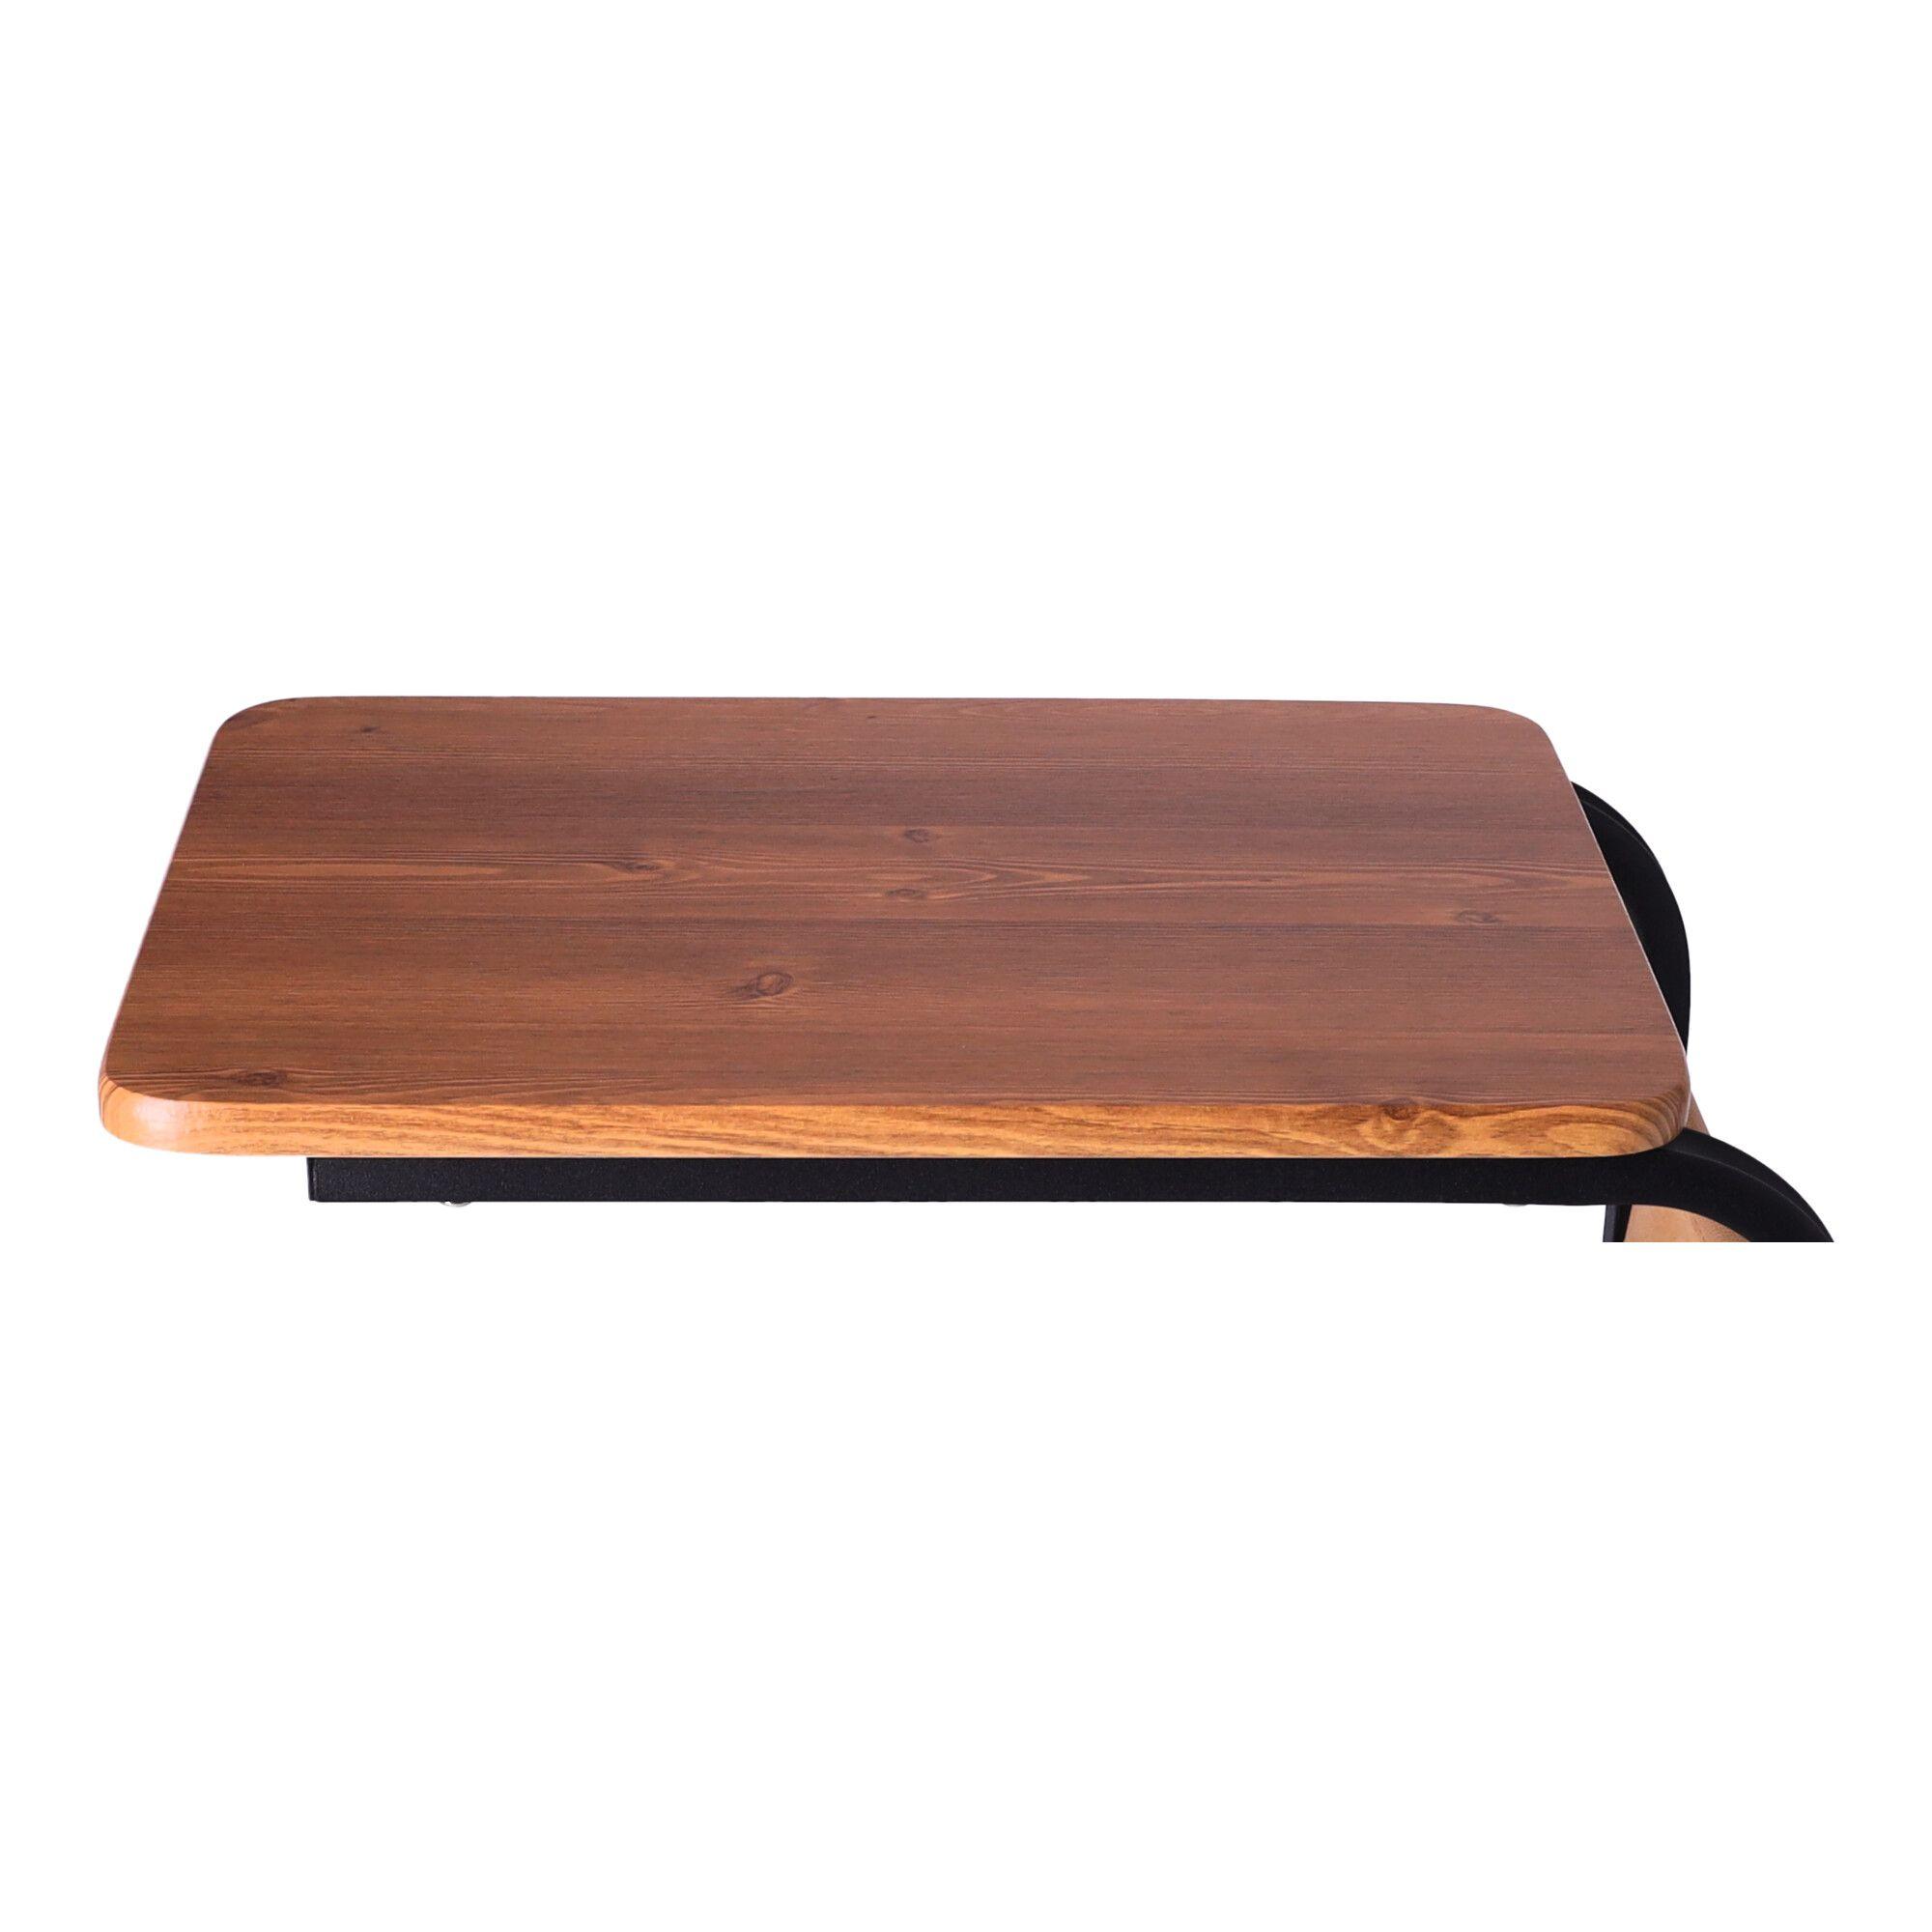 Mobilny stolik kawowy / Stolik kawowy boczny na kółkach - kolor ciemny